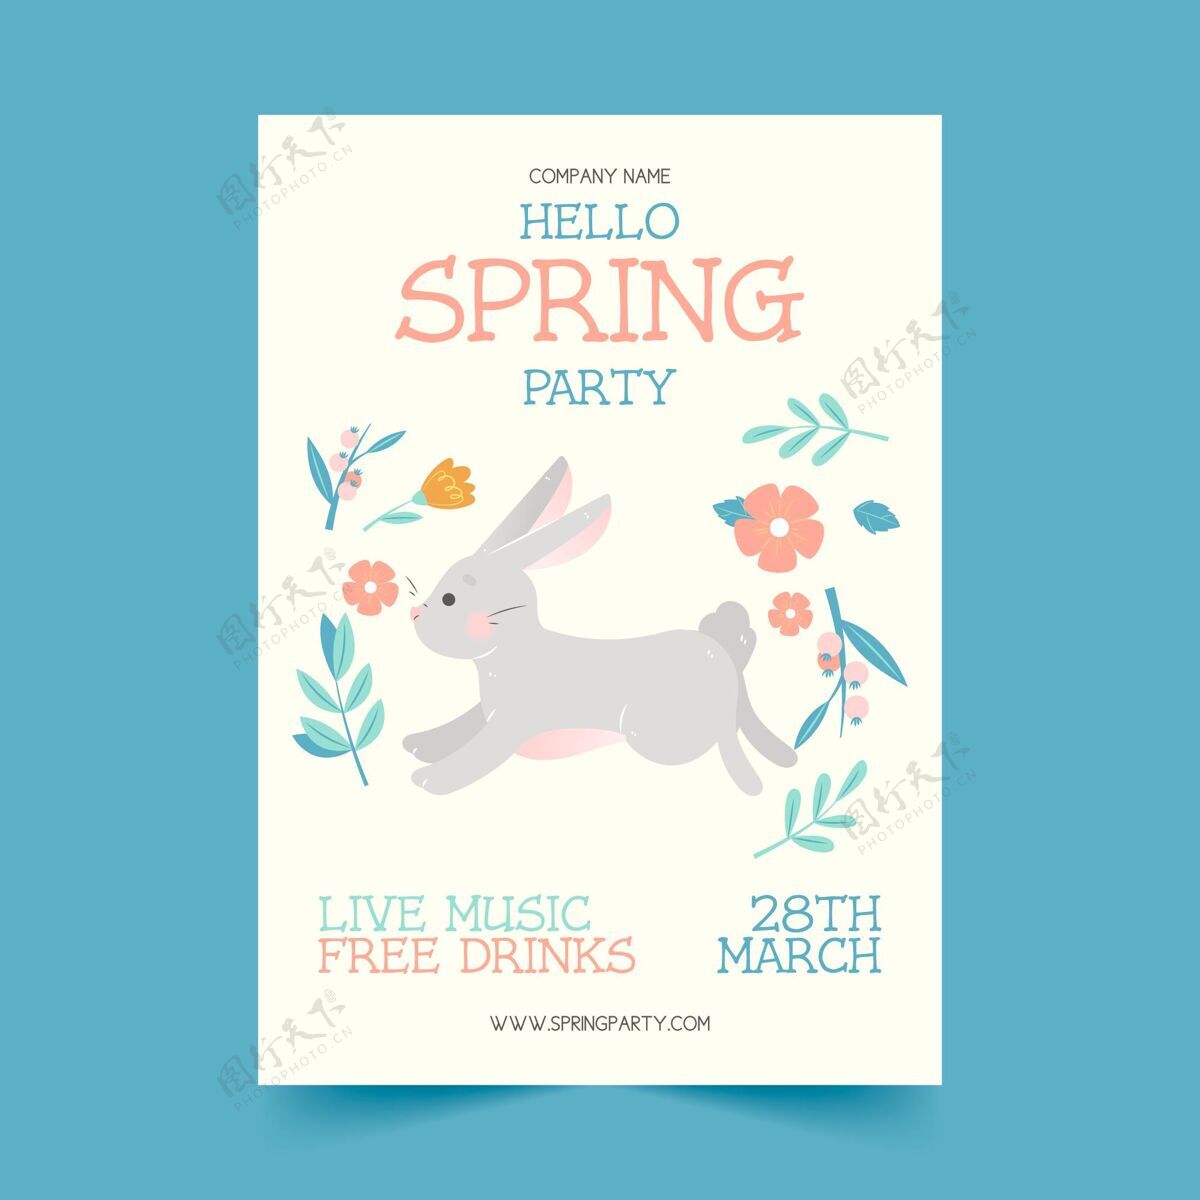 聚会手绘春季派对传单模板现场音乐兔子传单